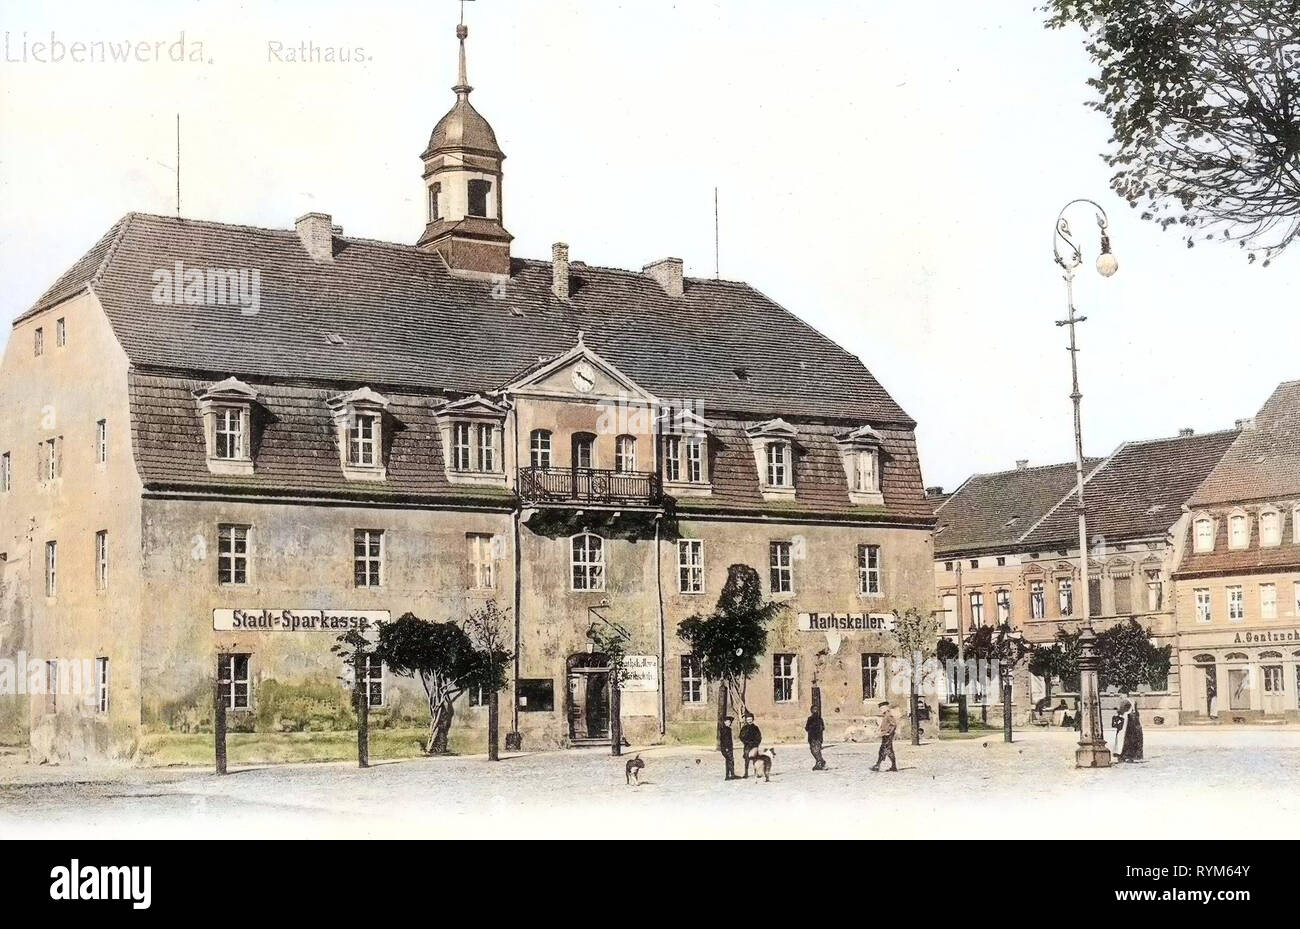 Il Rathaus Bad Liebenwerda 1903, Brandeburgo, Liebenwerda, Rathaus Foto Stock